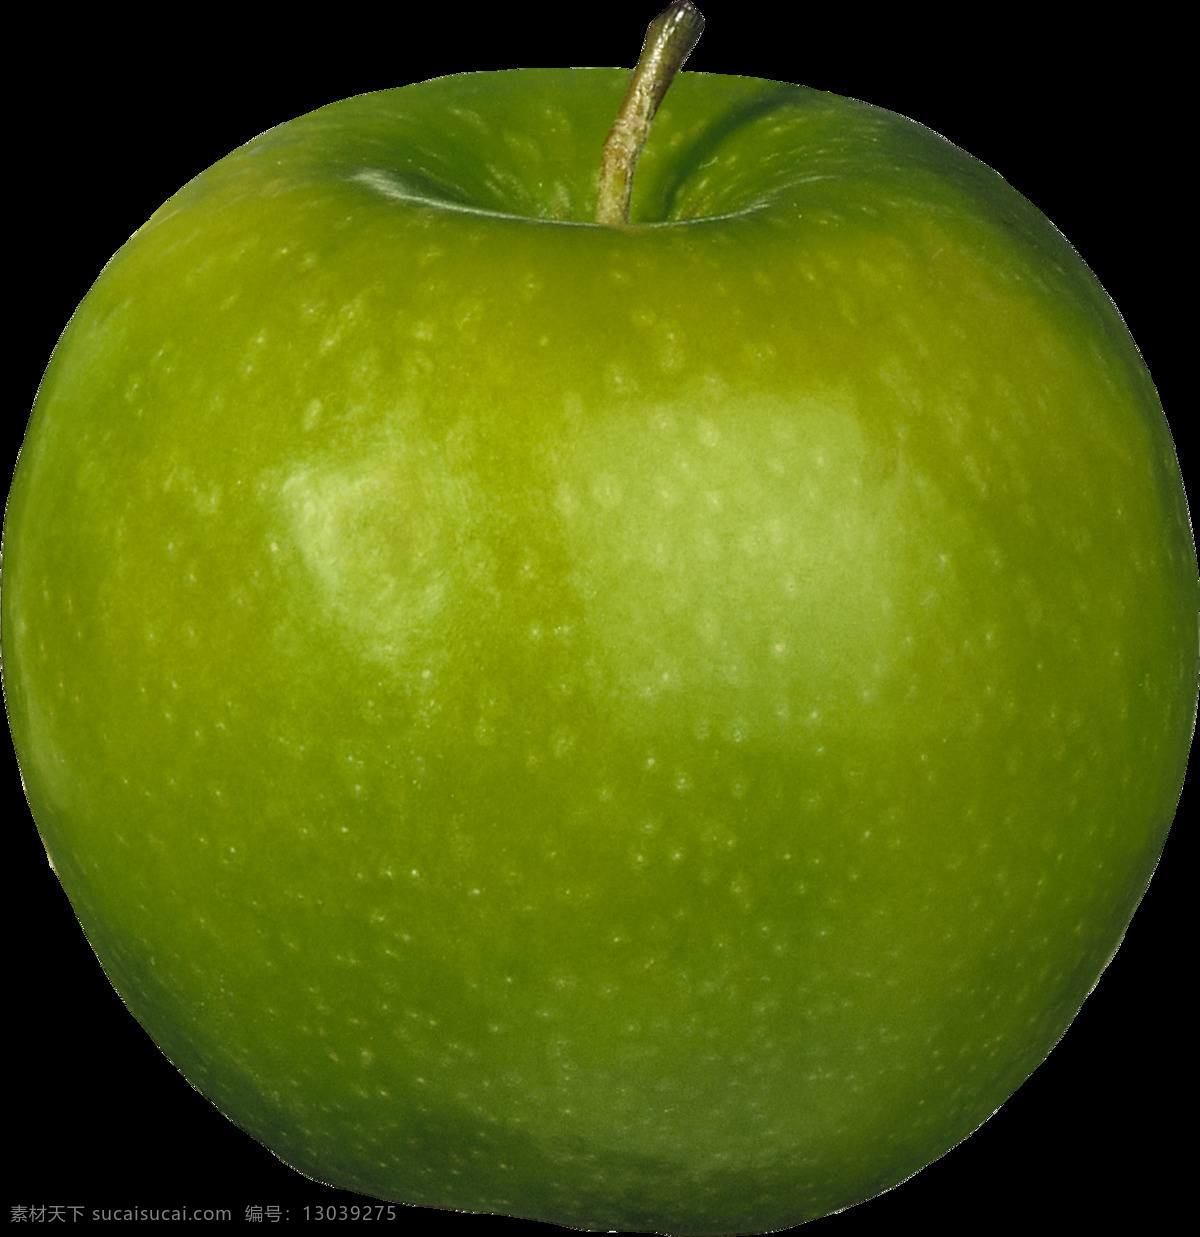 漂亮 绿 颜色 苹果 免 抠 透明 图 层 青苹果 苹果卡通图片 苹果logo 苹果简笔画 壁纸高清 大苹果 红苹果 苹果梨树 苹果商标 金毛苹果 青苹果榨汁